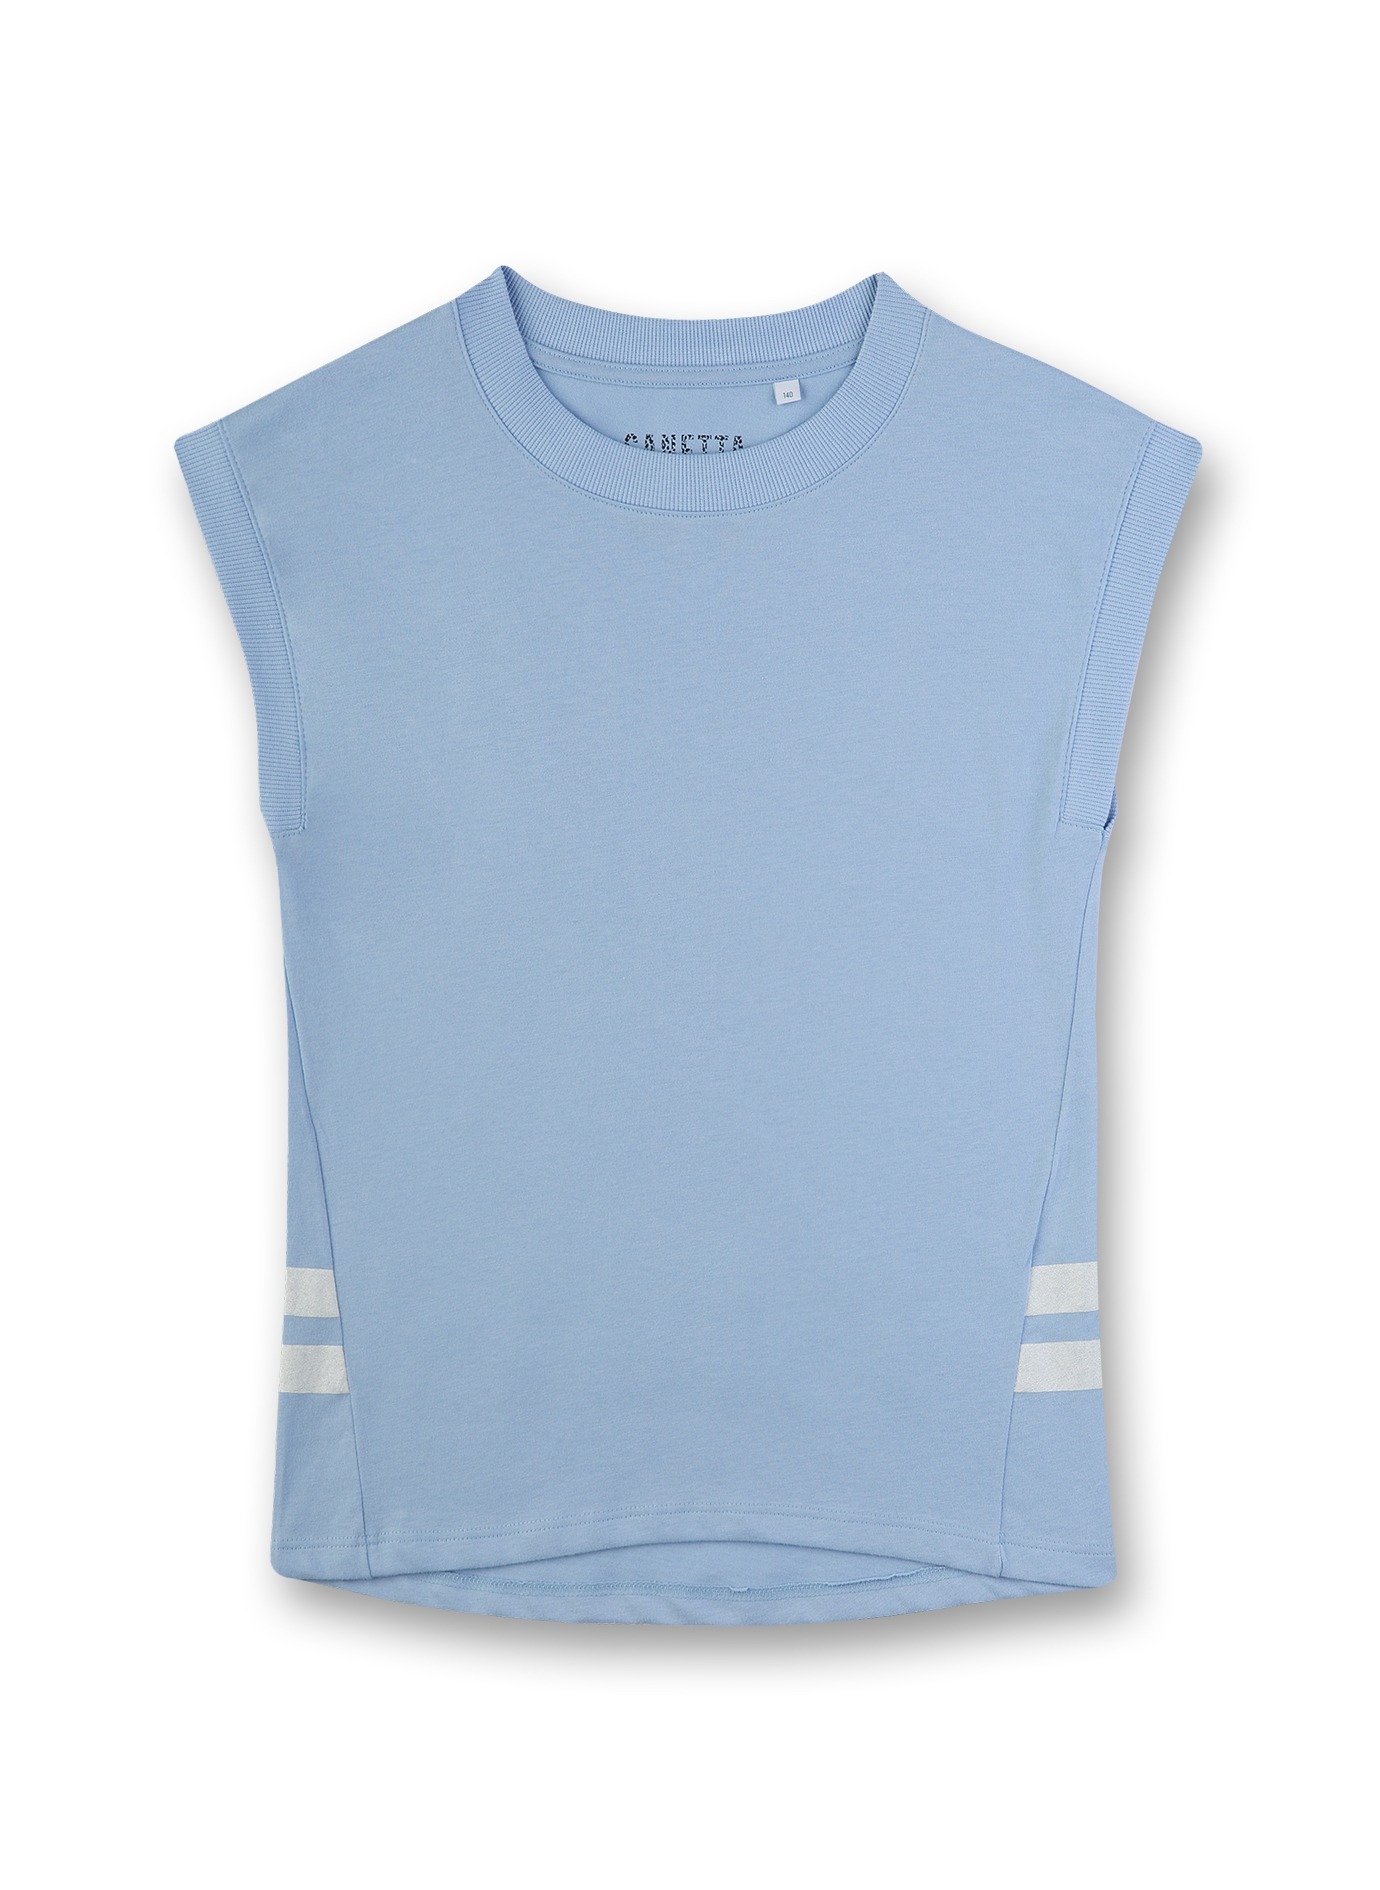 Mädchen T-Shirt Hellblau Athleisure